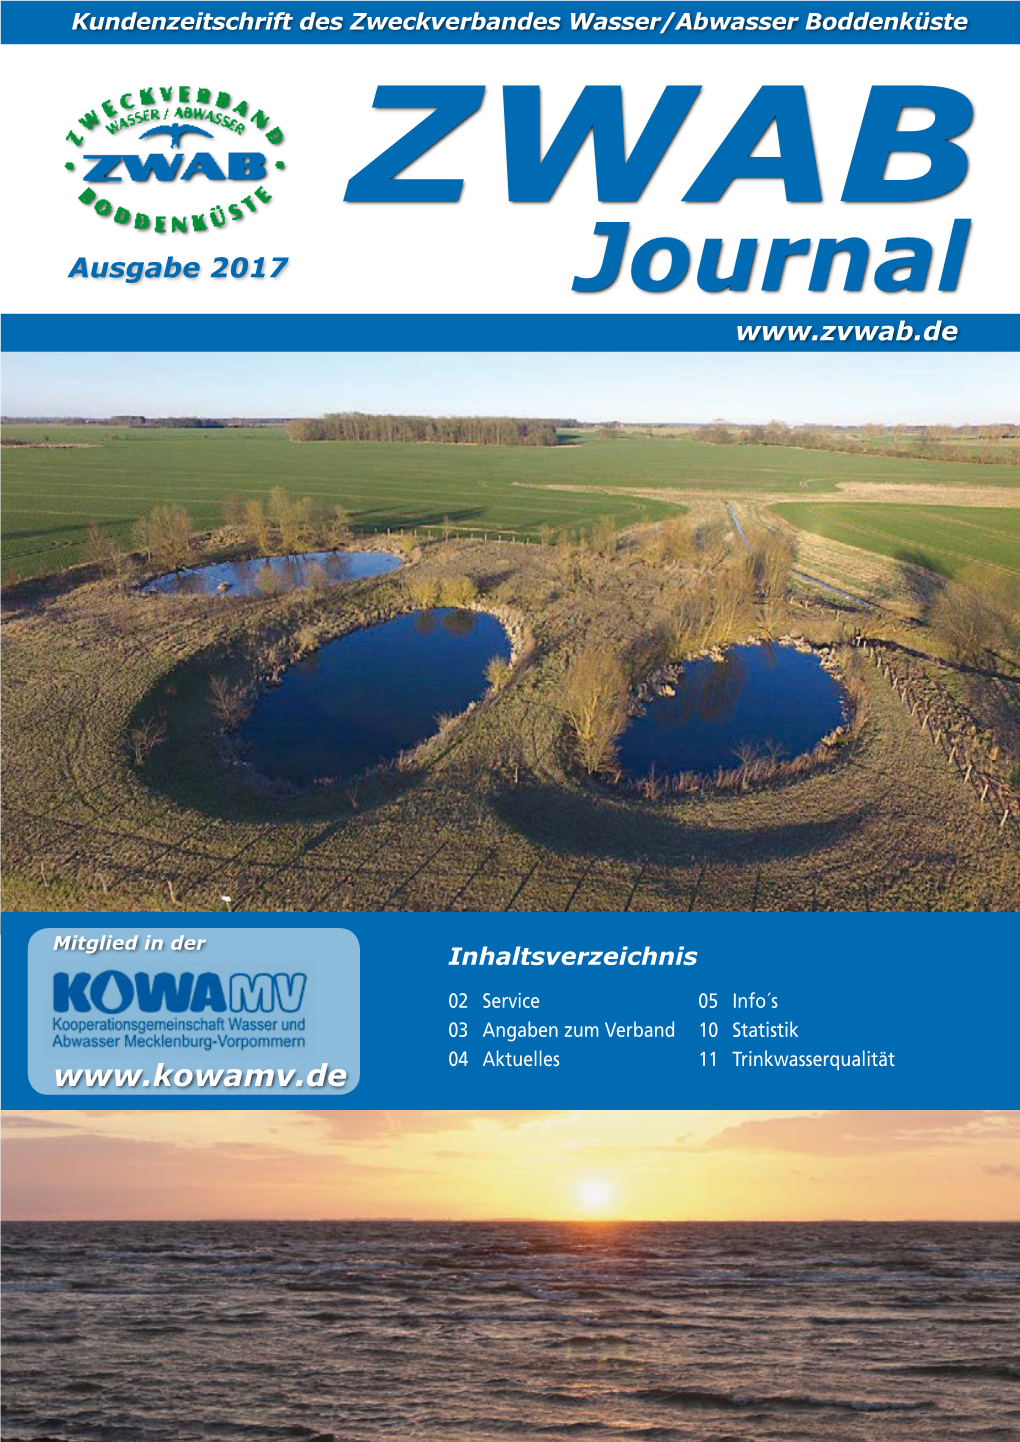 ZWAB Ausgabe 2017 Journal